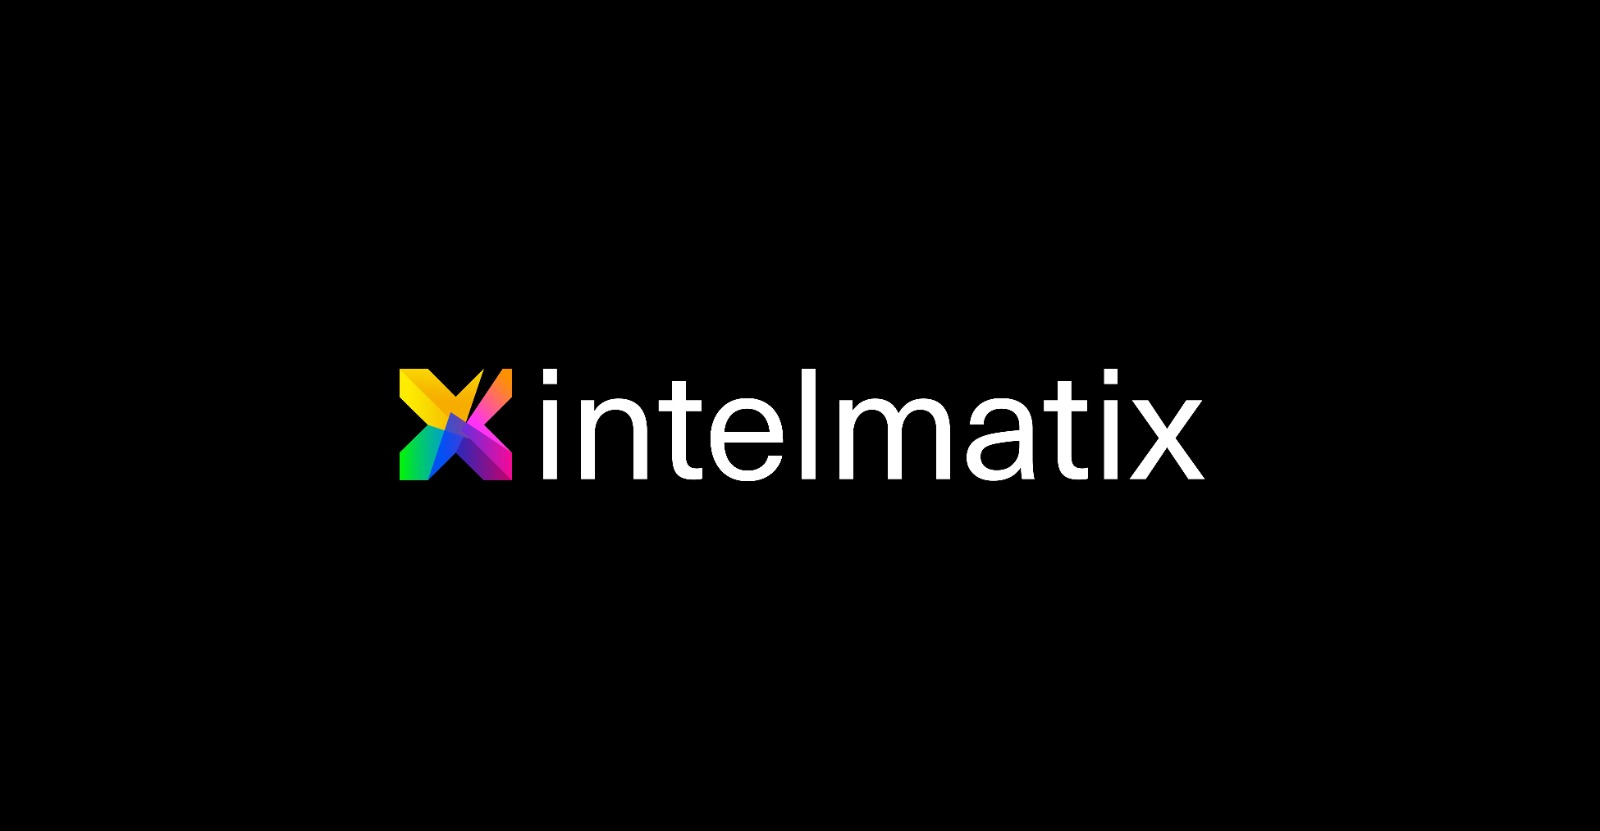 شركة الذكاء الاصطناعي Intelmatix تطلق أول حزمة تطبيقات لمنصة ذكاء القرار المؤسسي EDIX